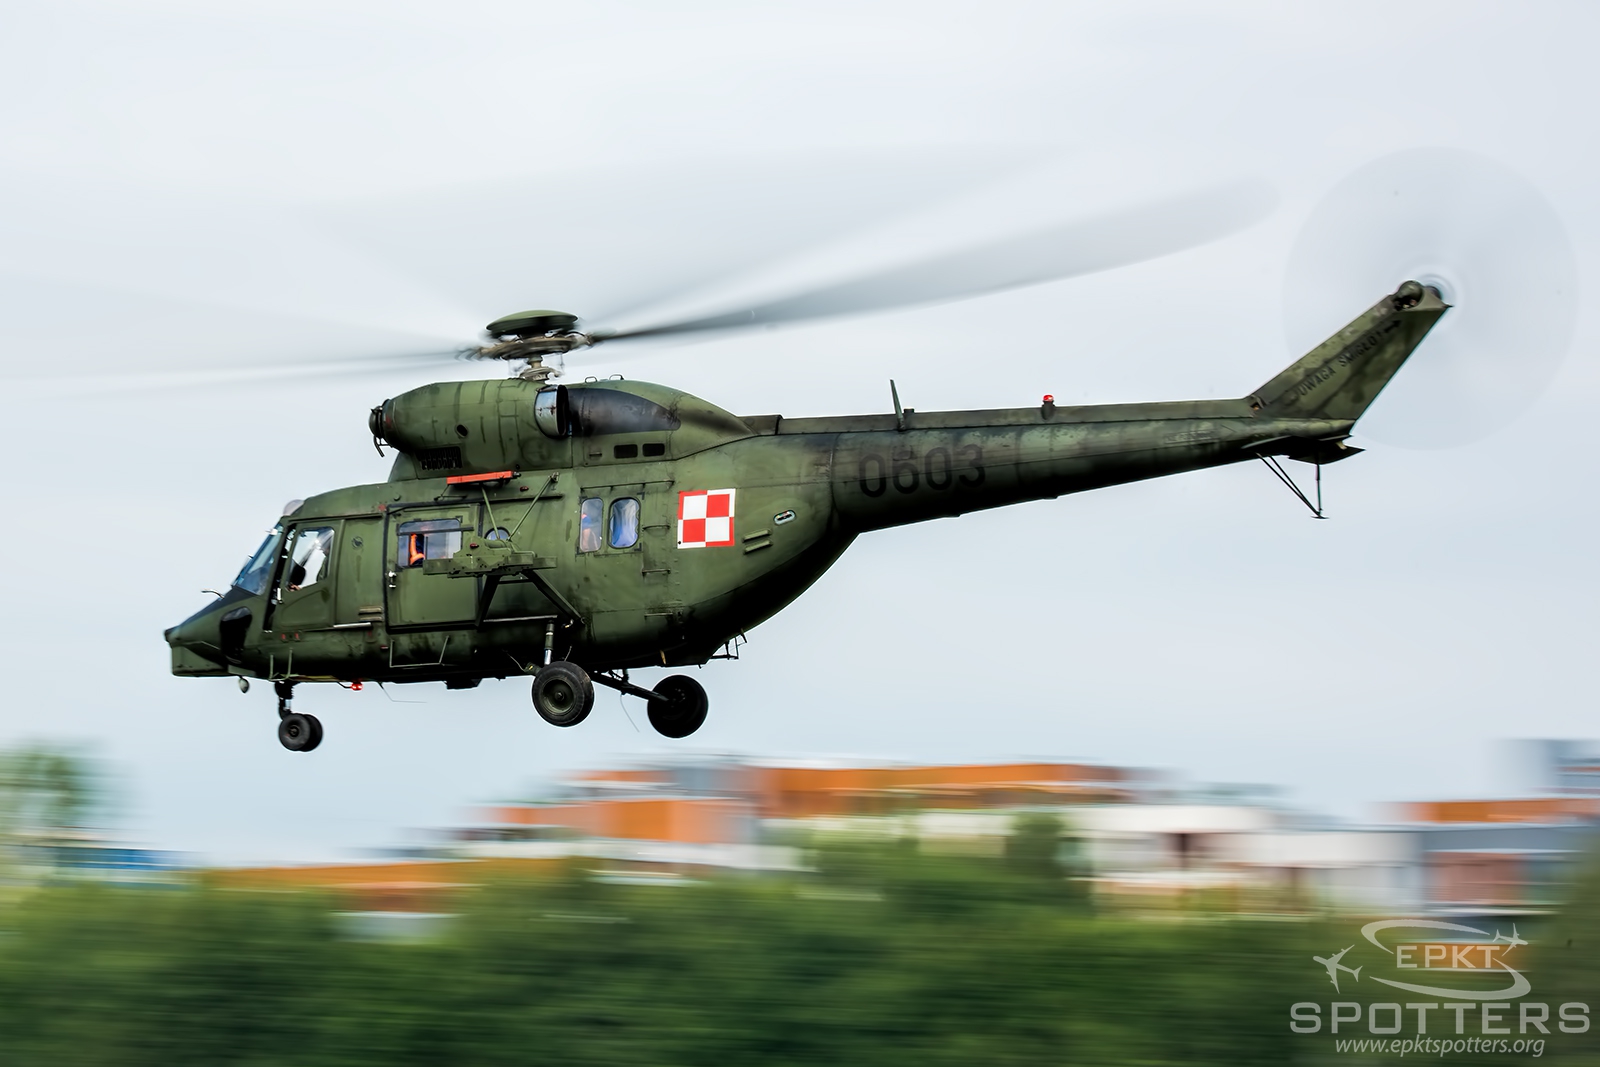 0603 - PZL-Swidnik W-3 W Sokol (Poland - Army) / Muchowiec - Katowice Poland [EPKM/]